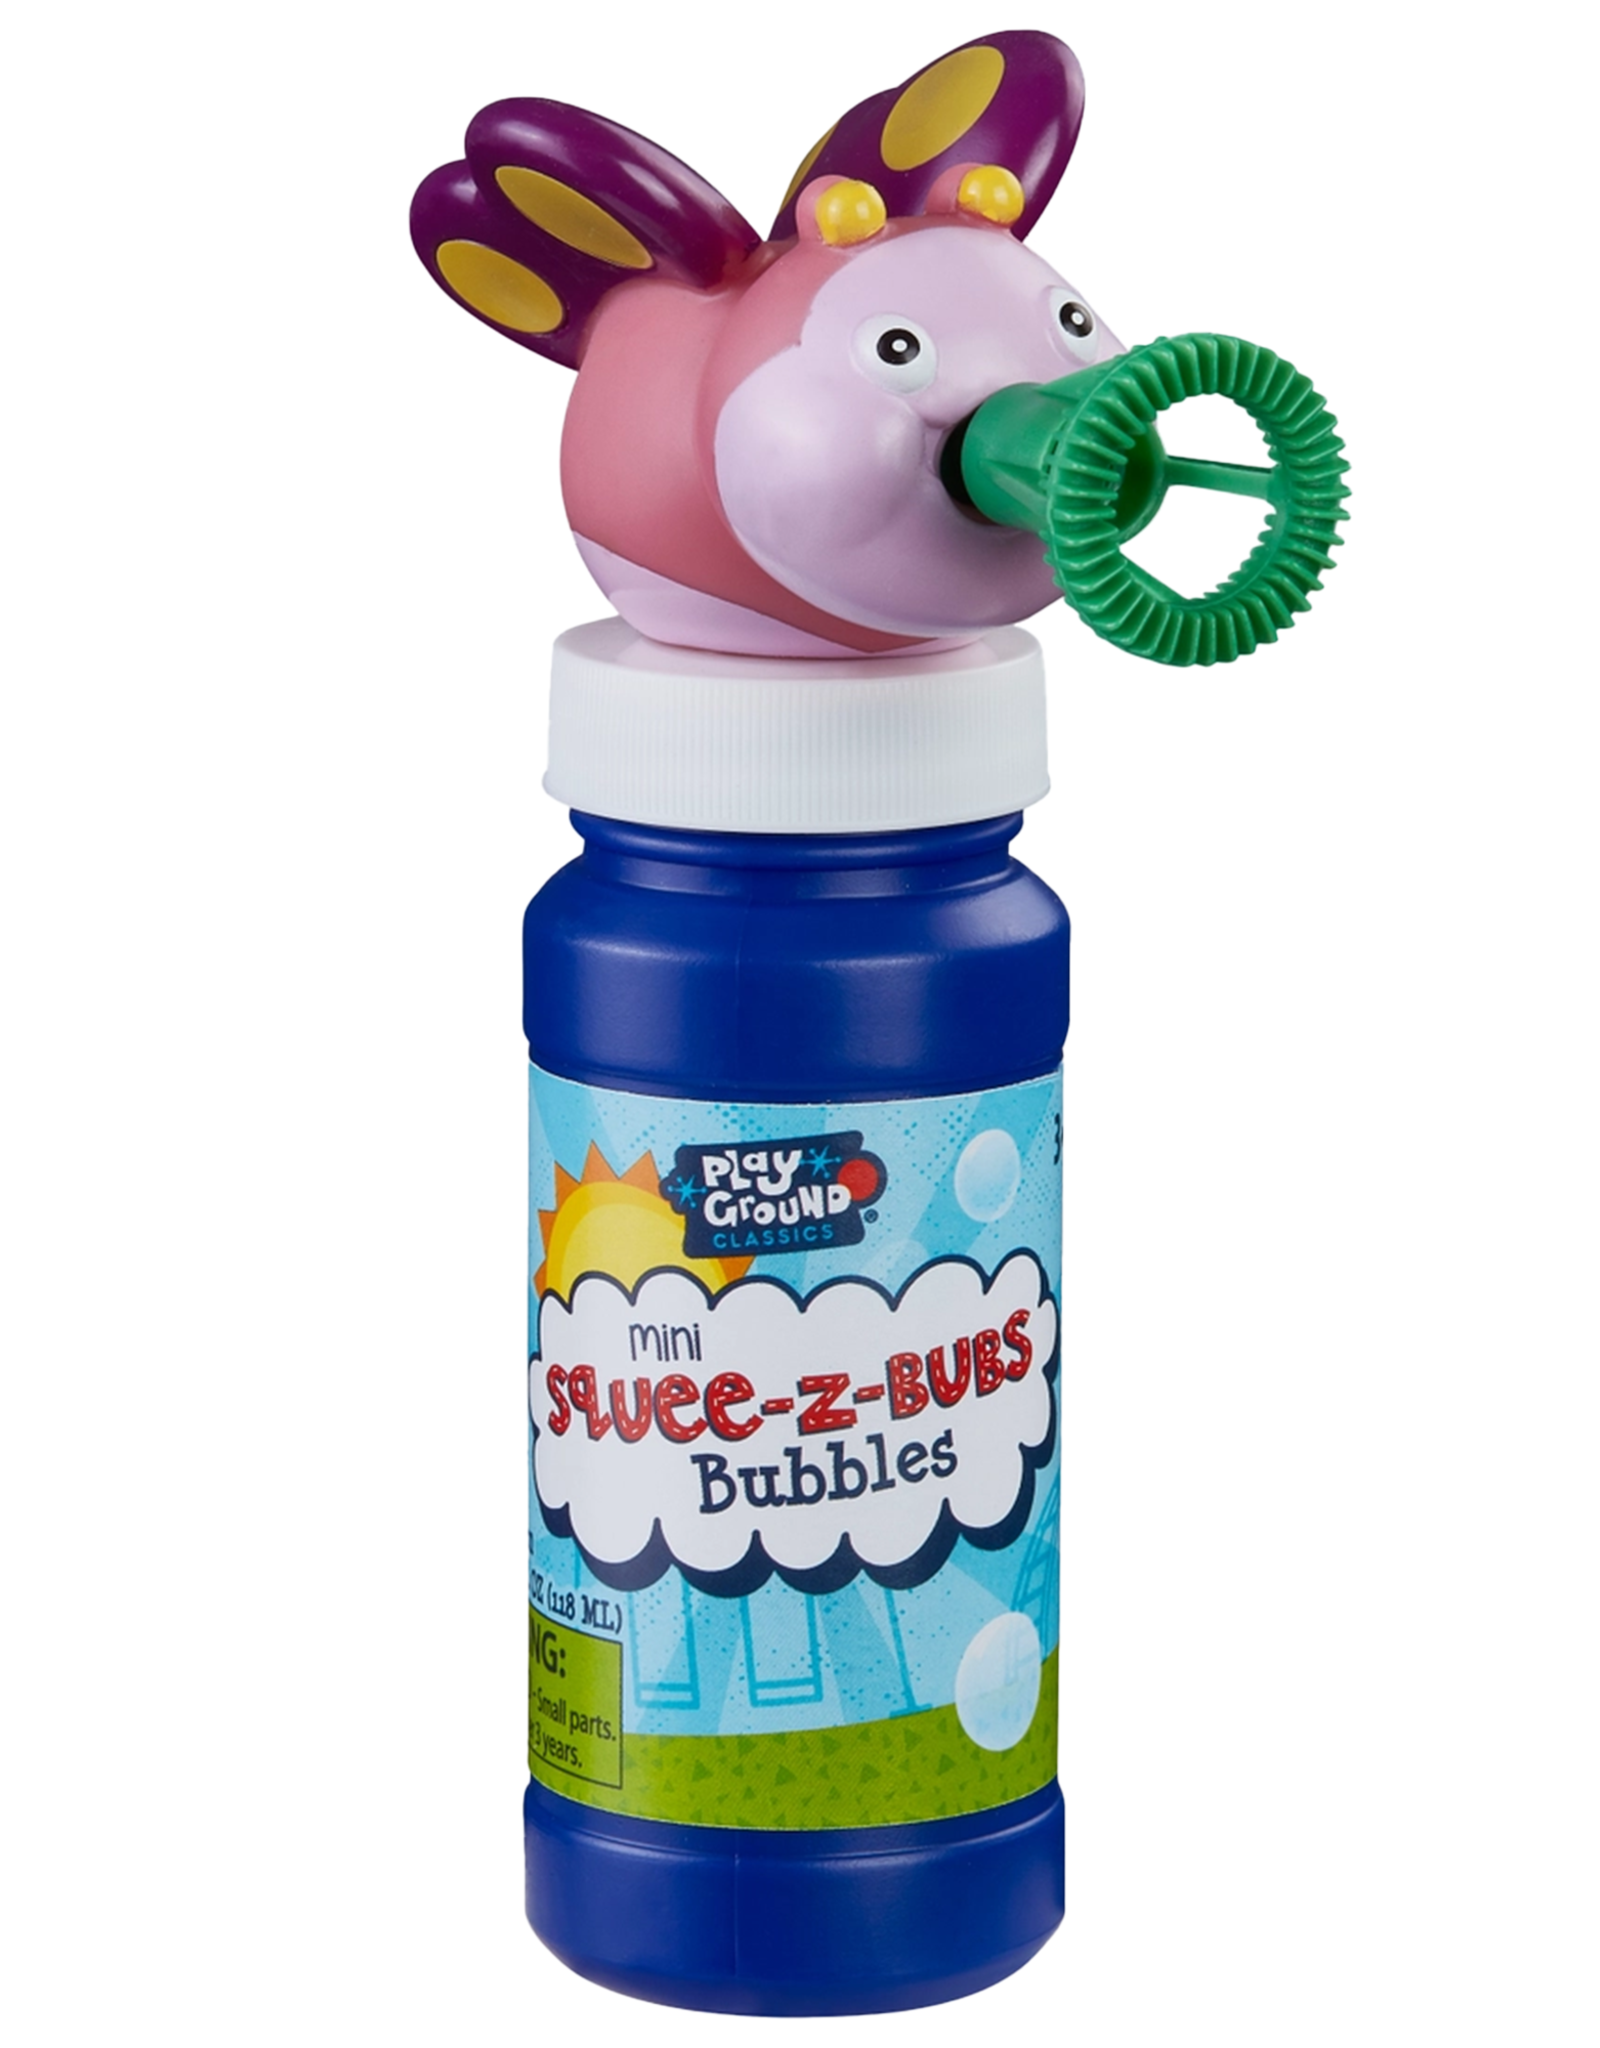 Toysmith Mini Squee-z Bub Bubbles